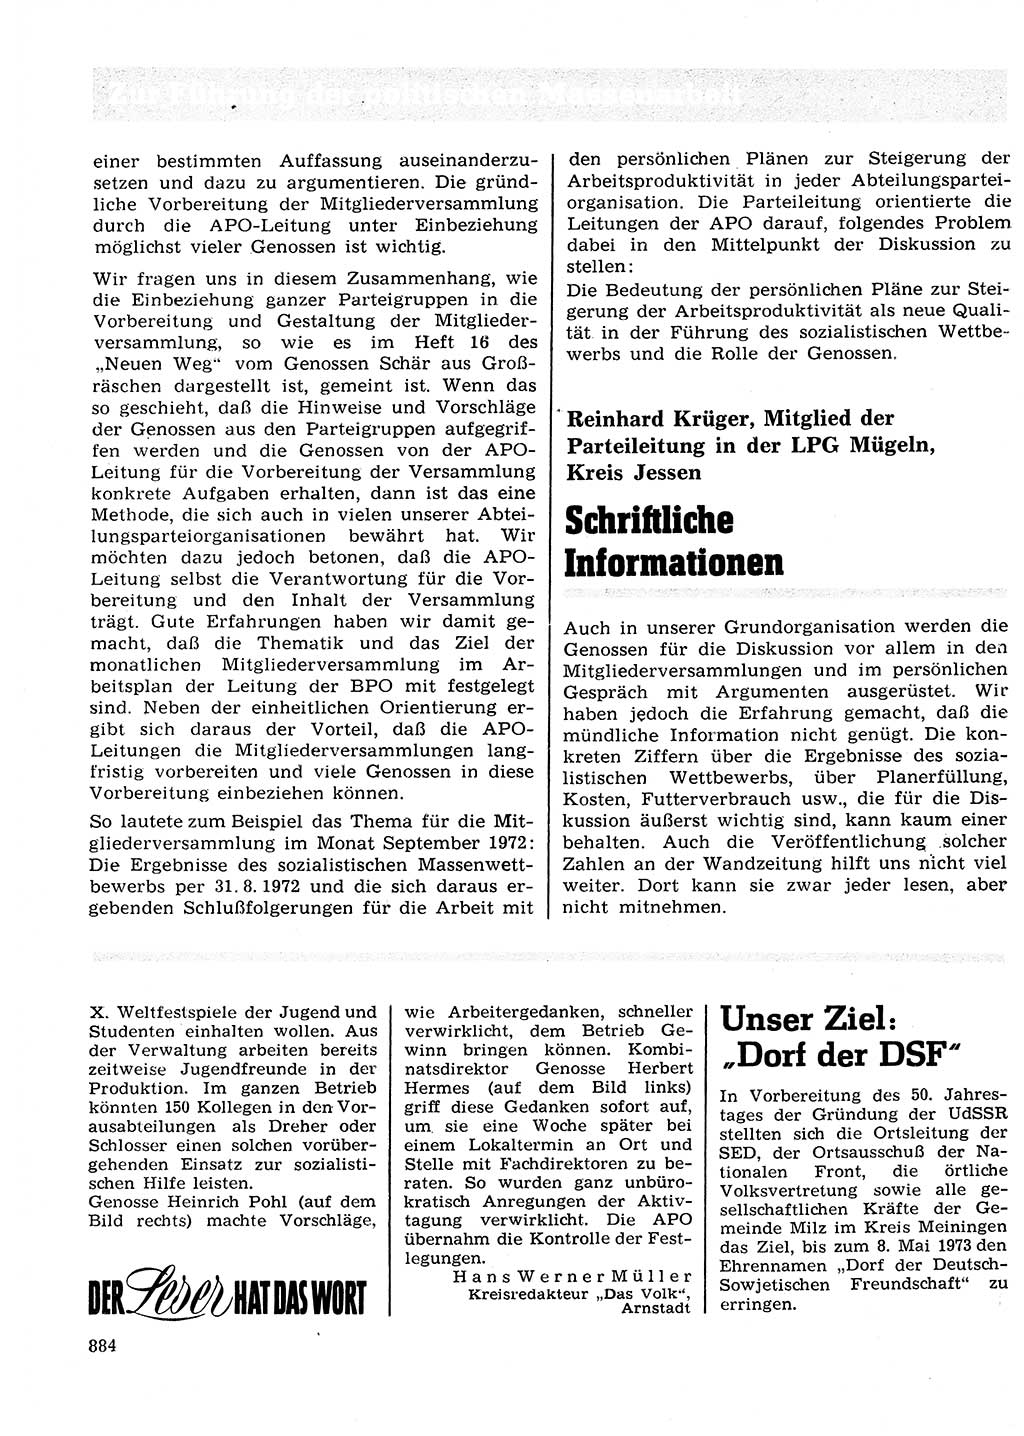 Neuer Weg (NW), Organ des Zentralkomitees (ZK) der SED (Sozialistische Einheitspartei Deutschlands) für Fragen des Parteilebens, 27. Jahrgang [Deutsche Demokratische Republik (DDR)] 1972, Seite 884 (NW ZK SED DDR 1972, S. 884)